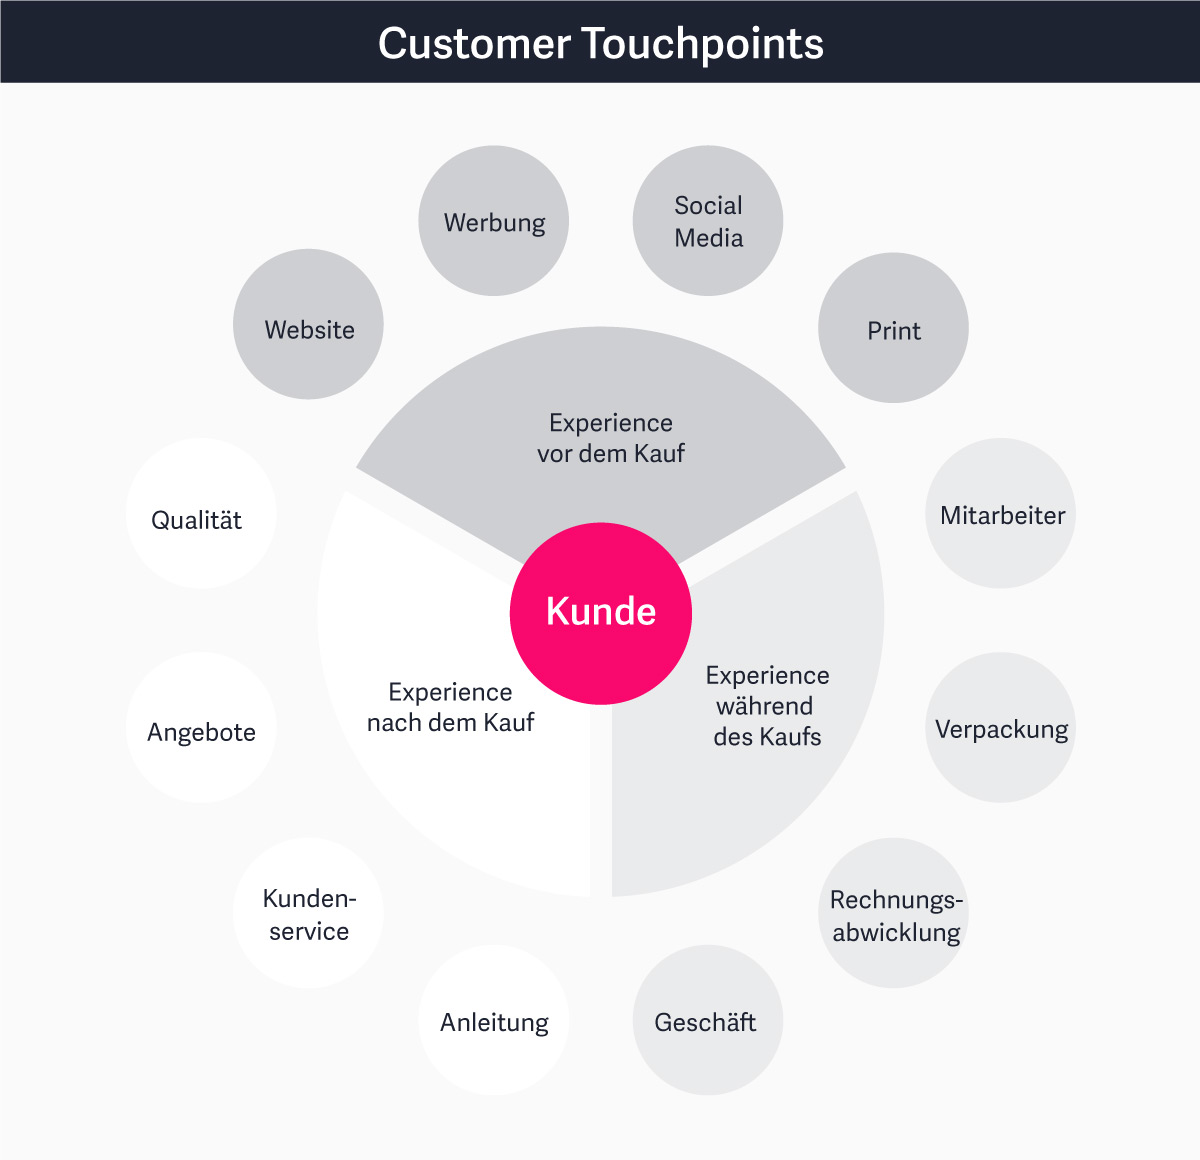 Unterschiedliche Touchpoints des Customers mit dem Unternehmen/dem Produkt.